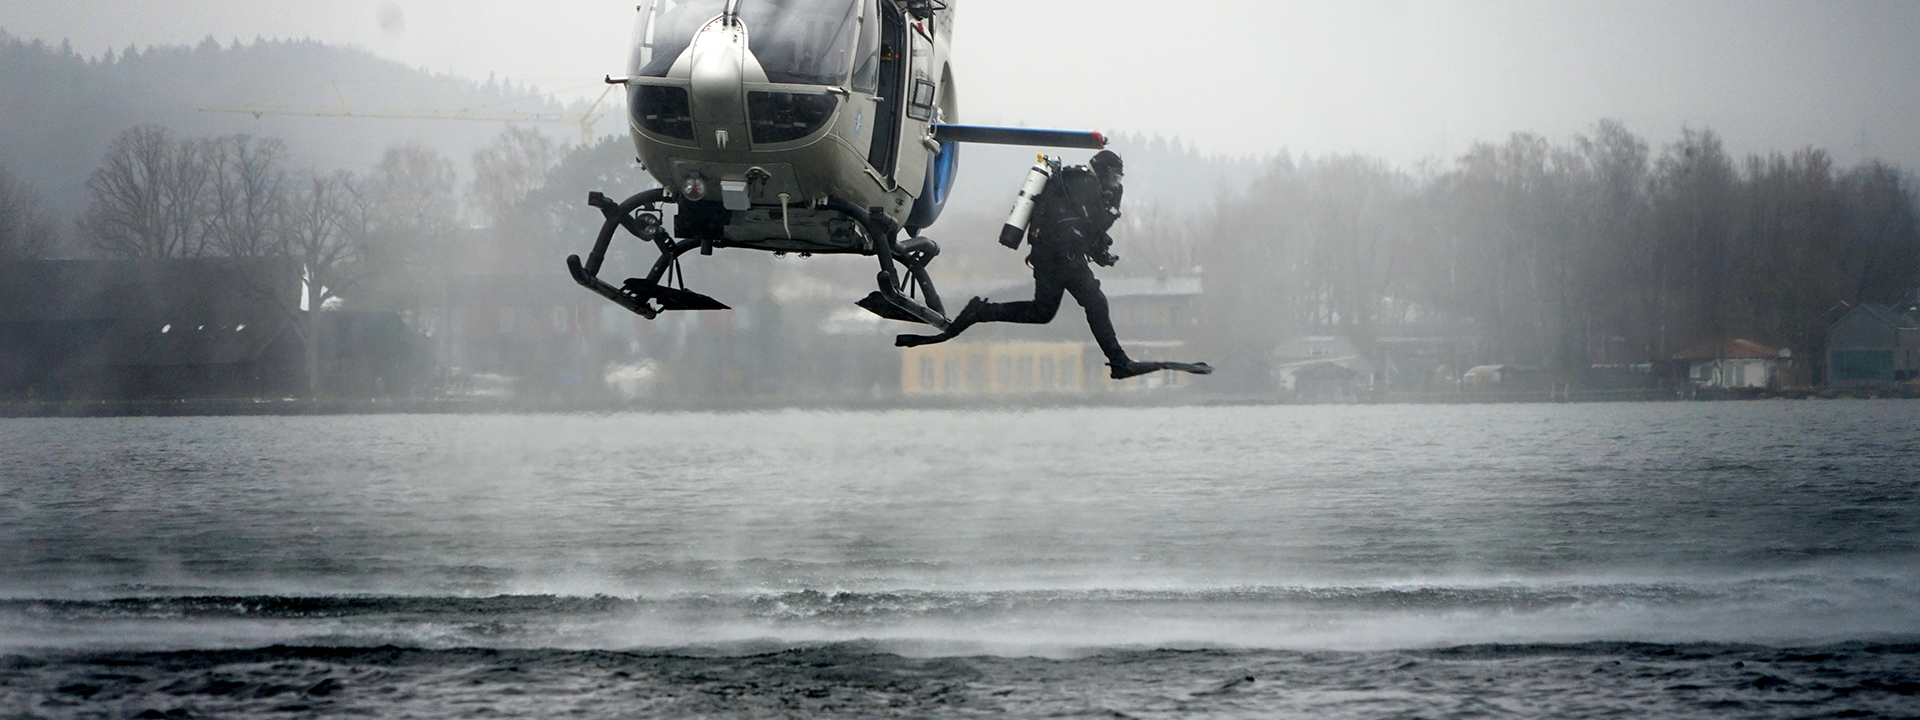 Polizeitaucher springt aus Hubschrauber